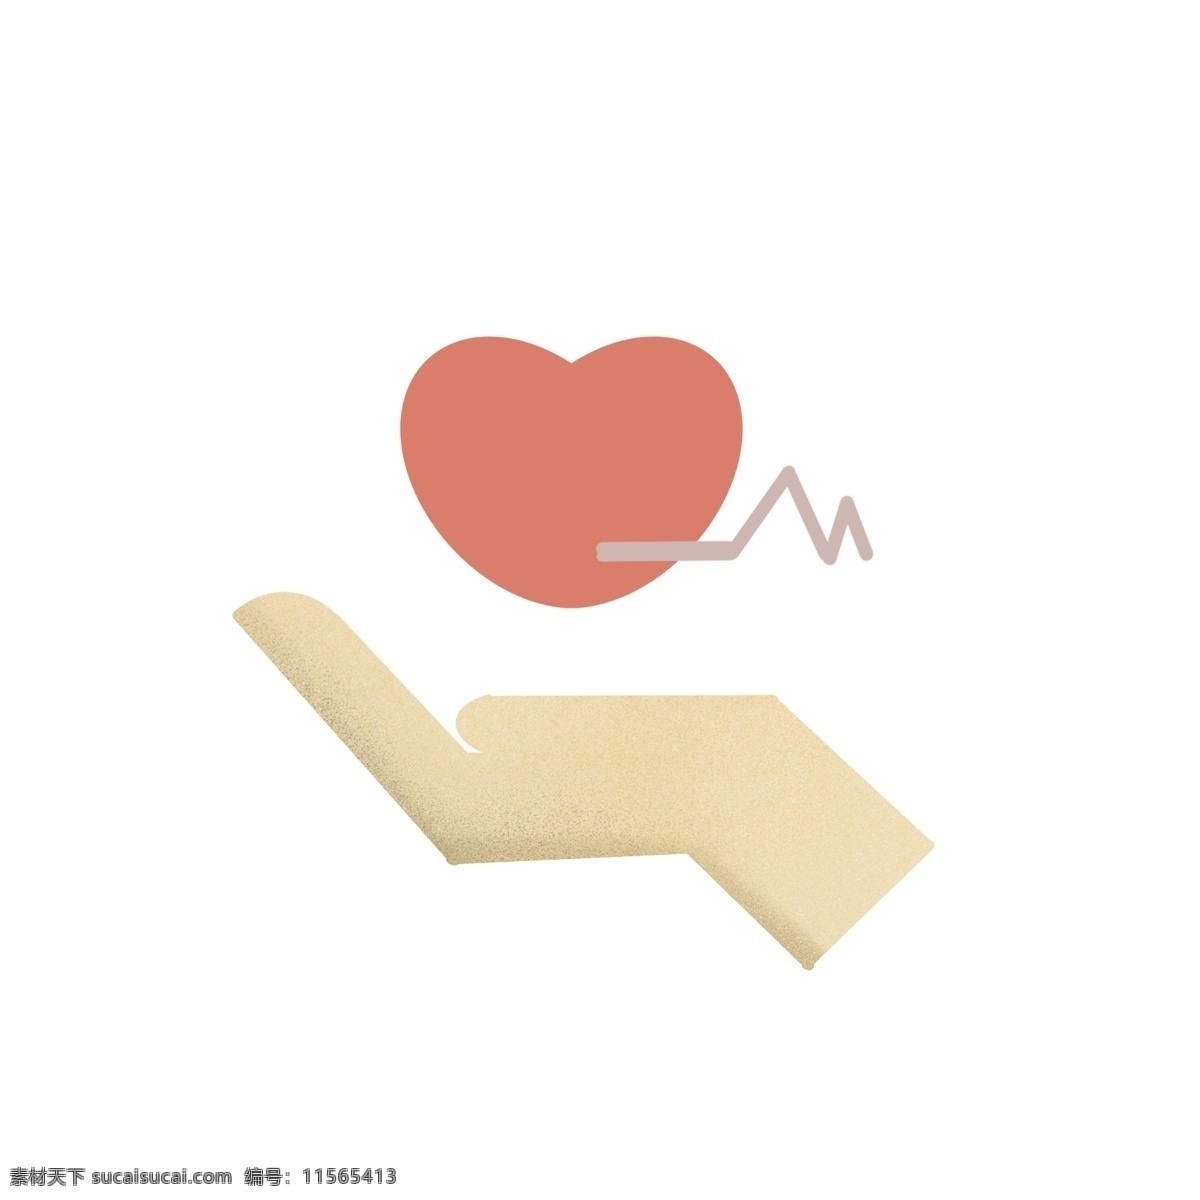 一个 爱护 心脏 标志 一个标志 图标 健康 保护 手绘 扁平化